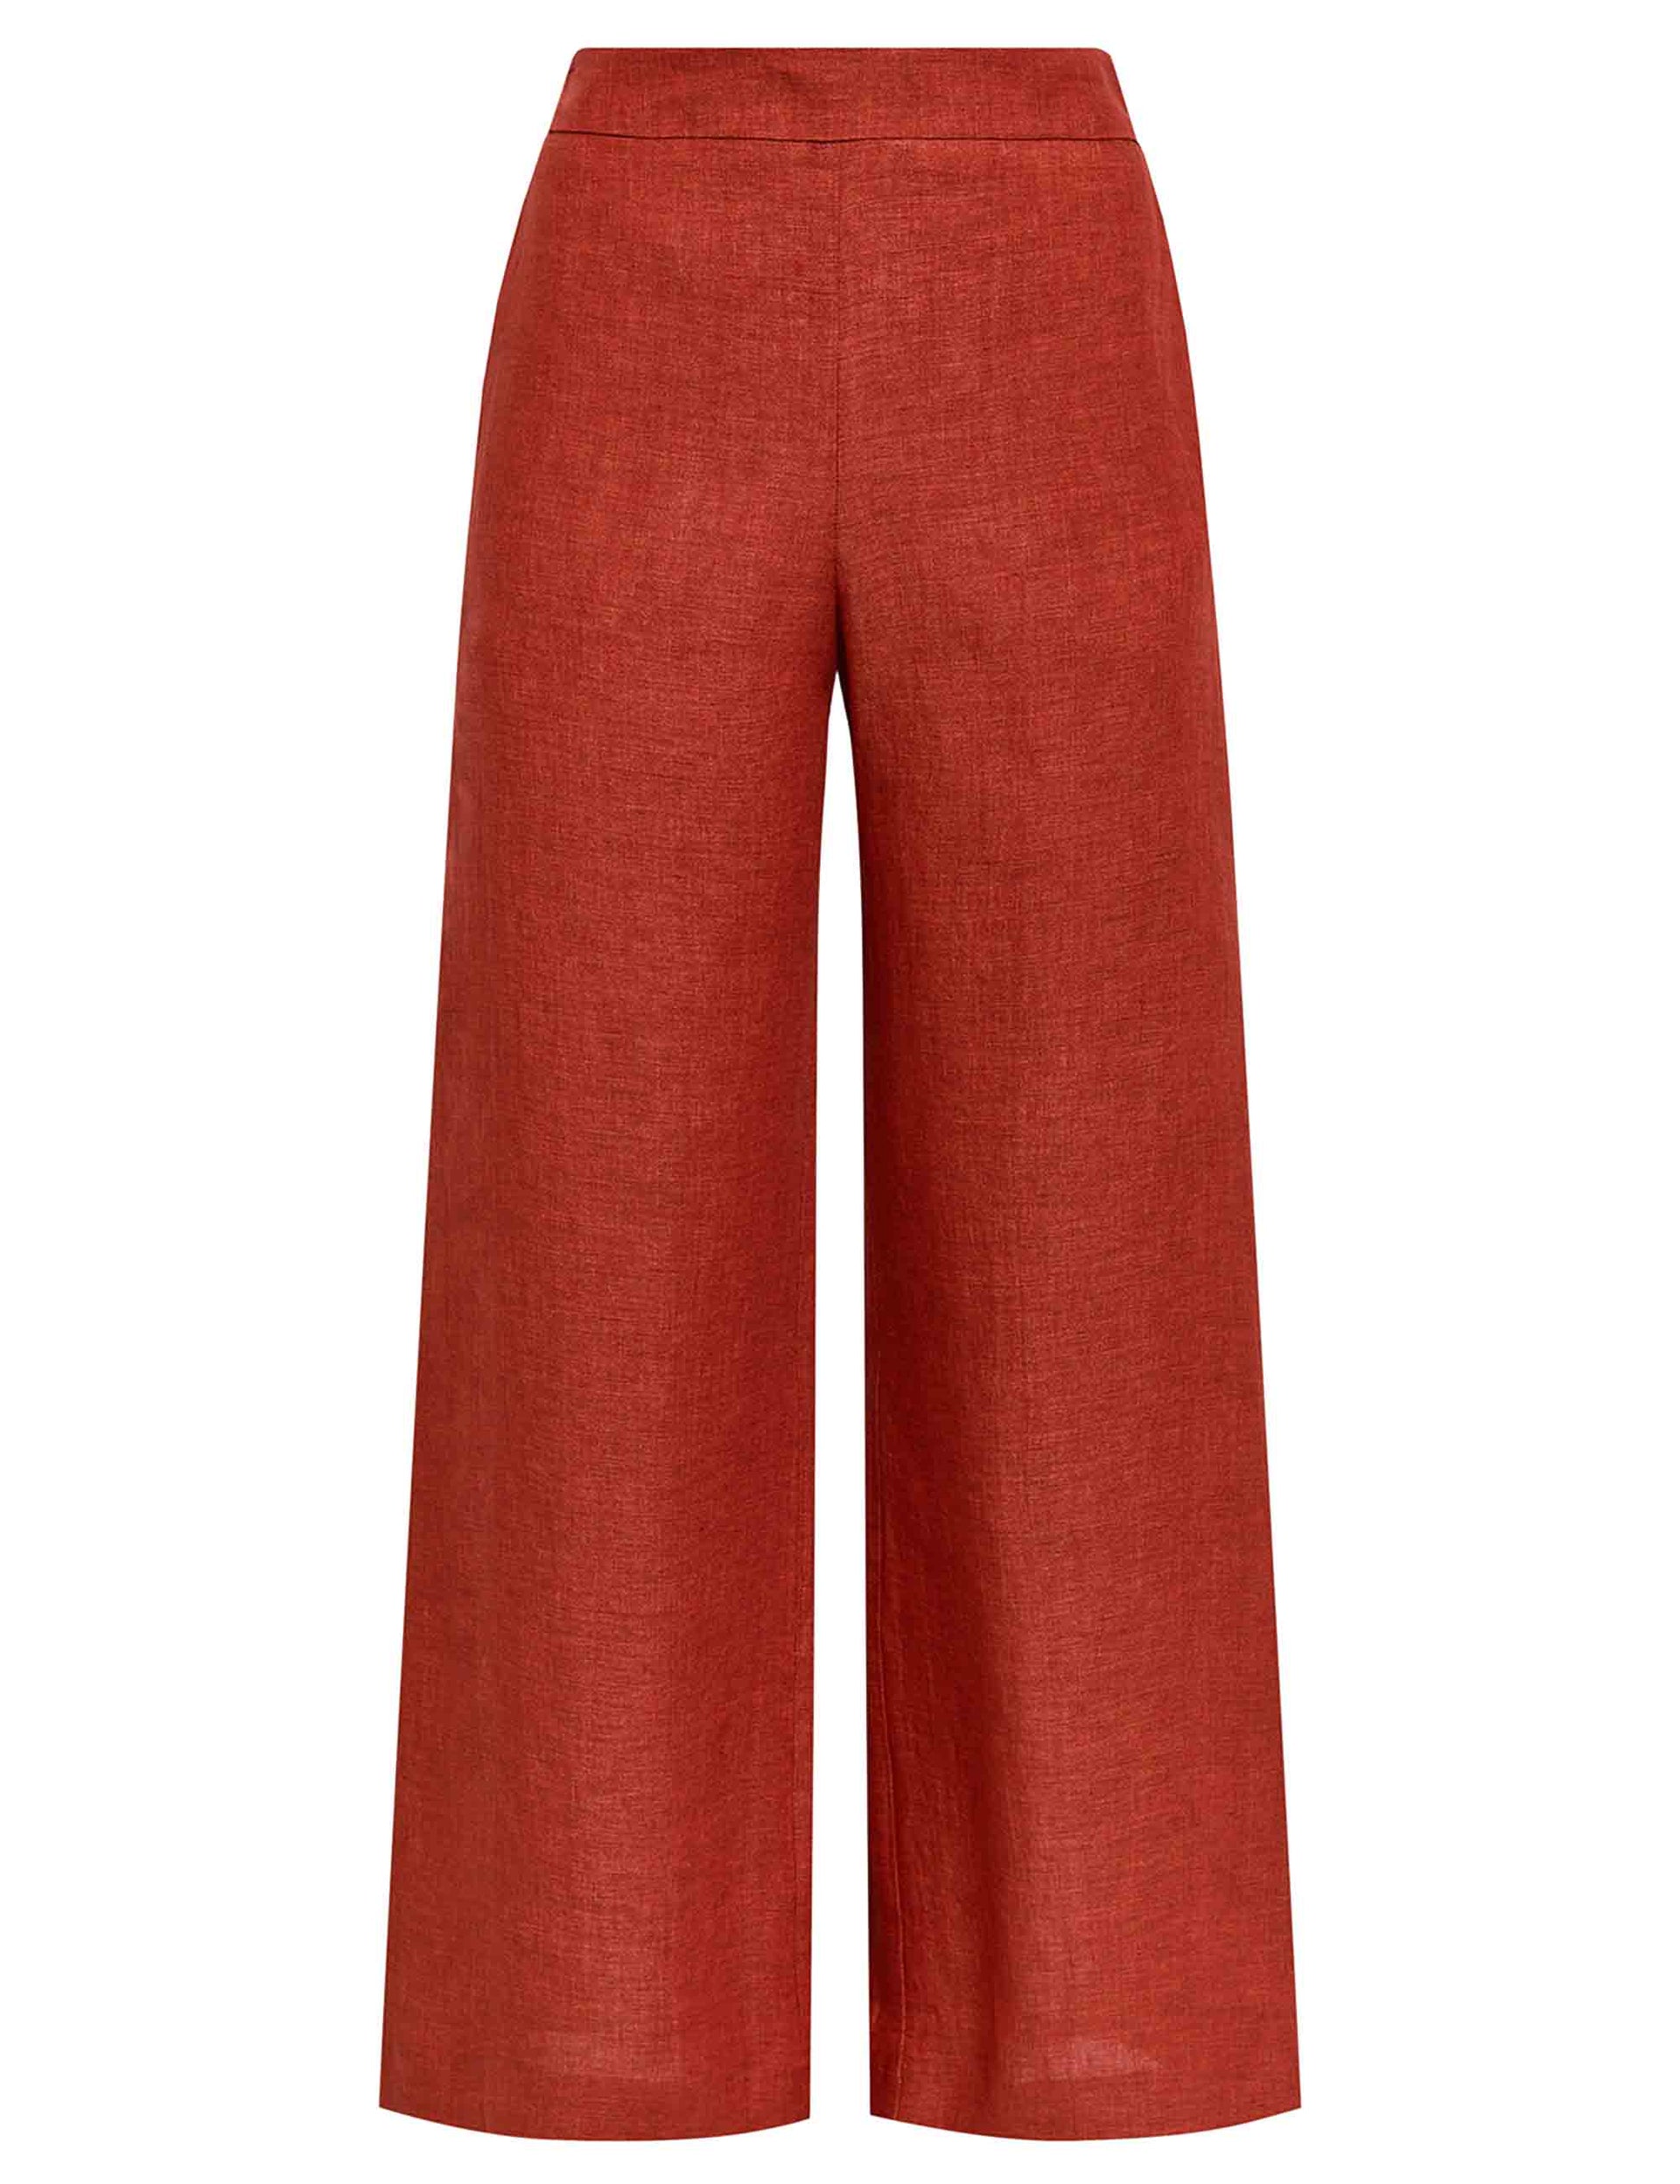 Délavé women's trousers in tan linen